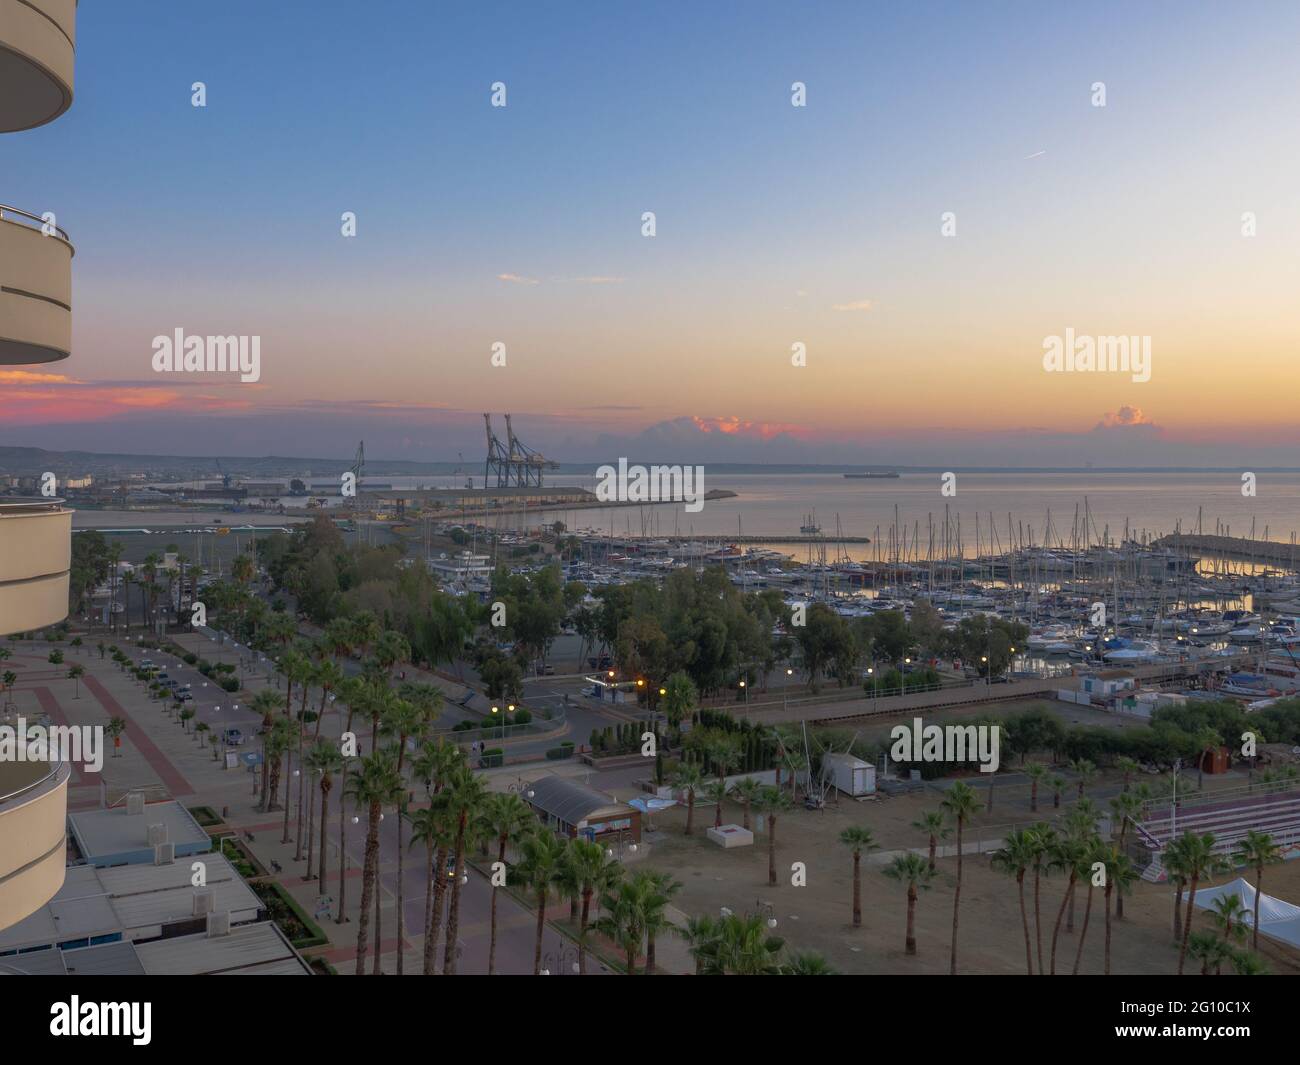 Vue aérienne supérieure surplombant le lever du soleil sur la promenade des palmiers de Finikoudes et le quai avec des yachts près de la mer Méditerranée dans la ville de Larnaca, Chypre. Banque D'Images